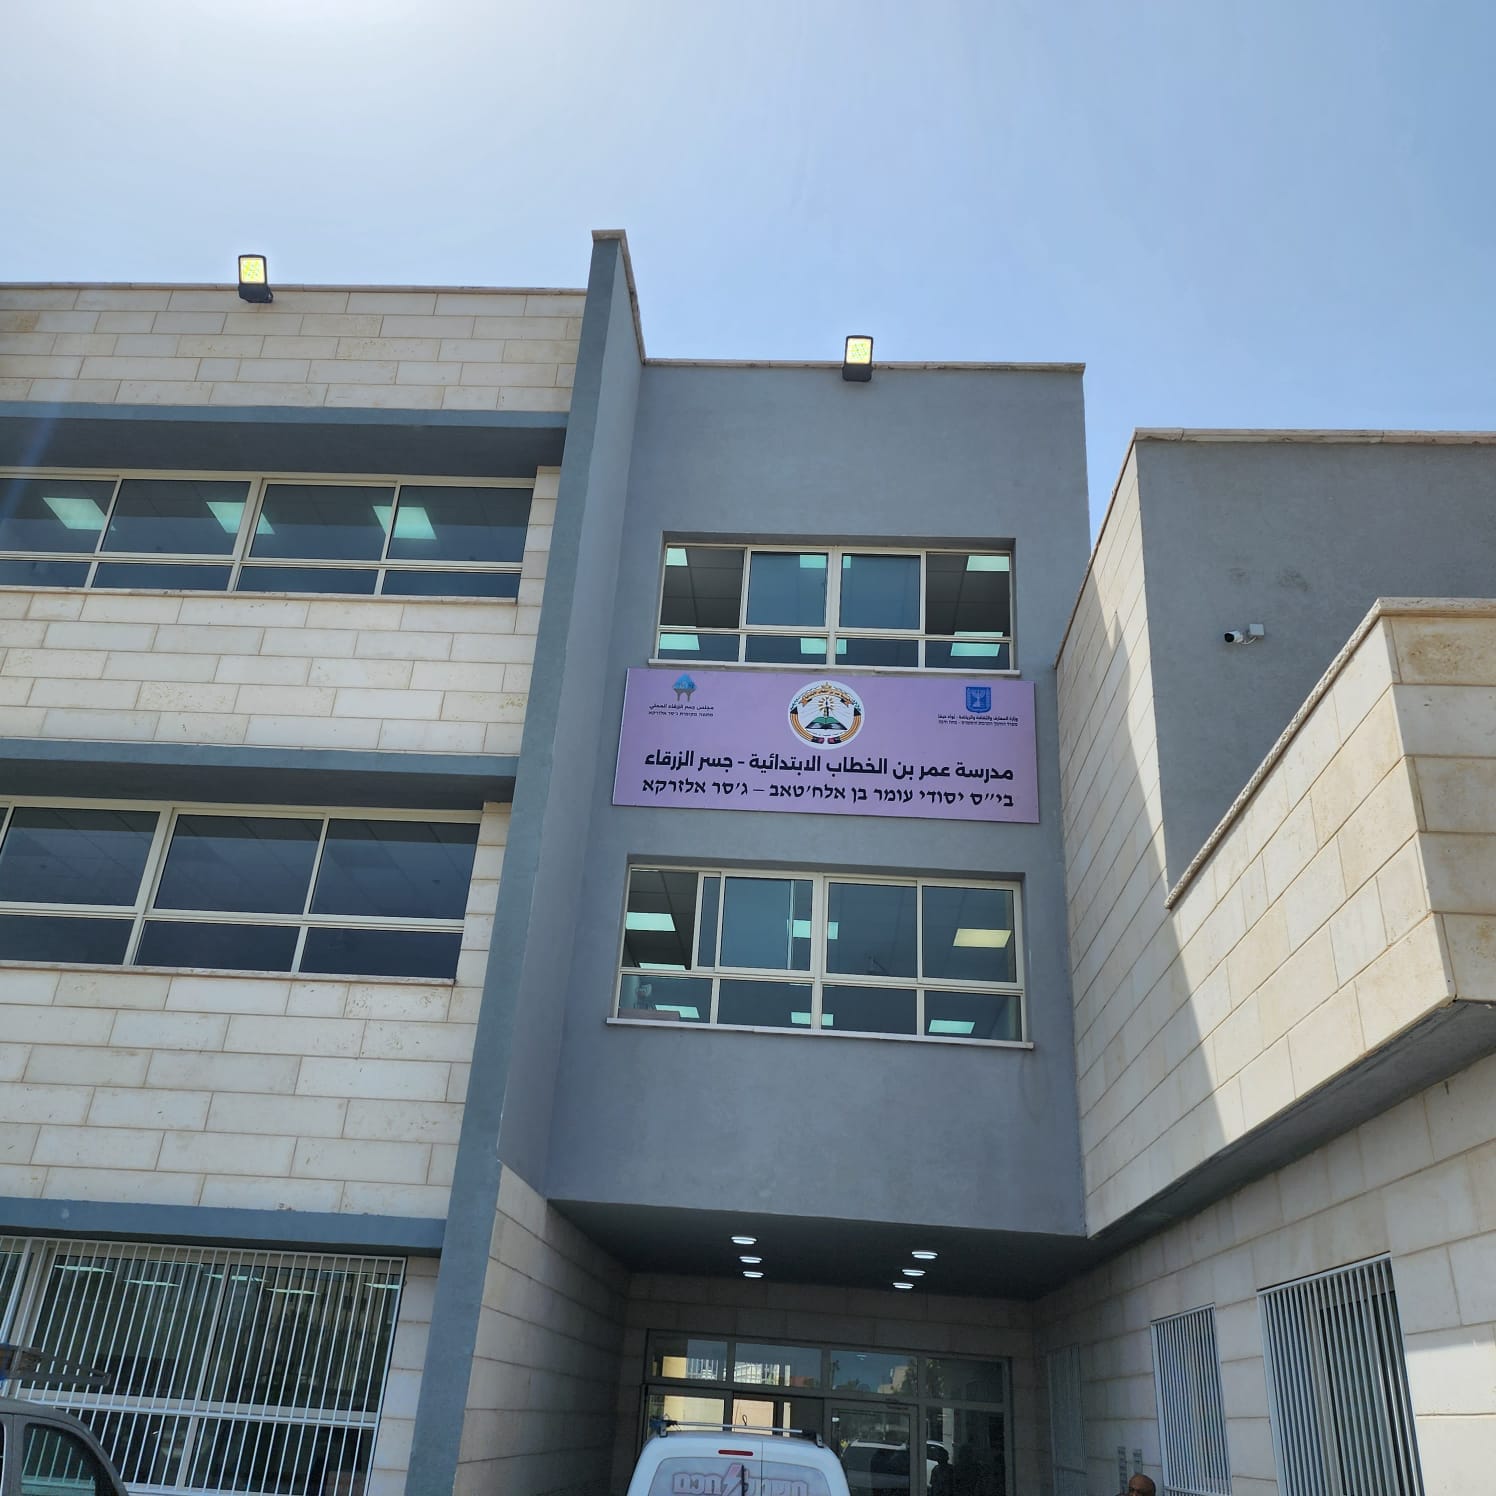 بشكل رسمي وفعلي سيتم افتتاح مدرسة عمر بن الخطاب في مبناها الجديد